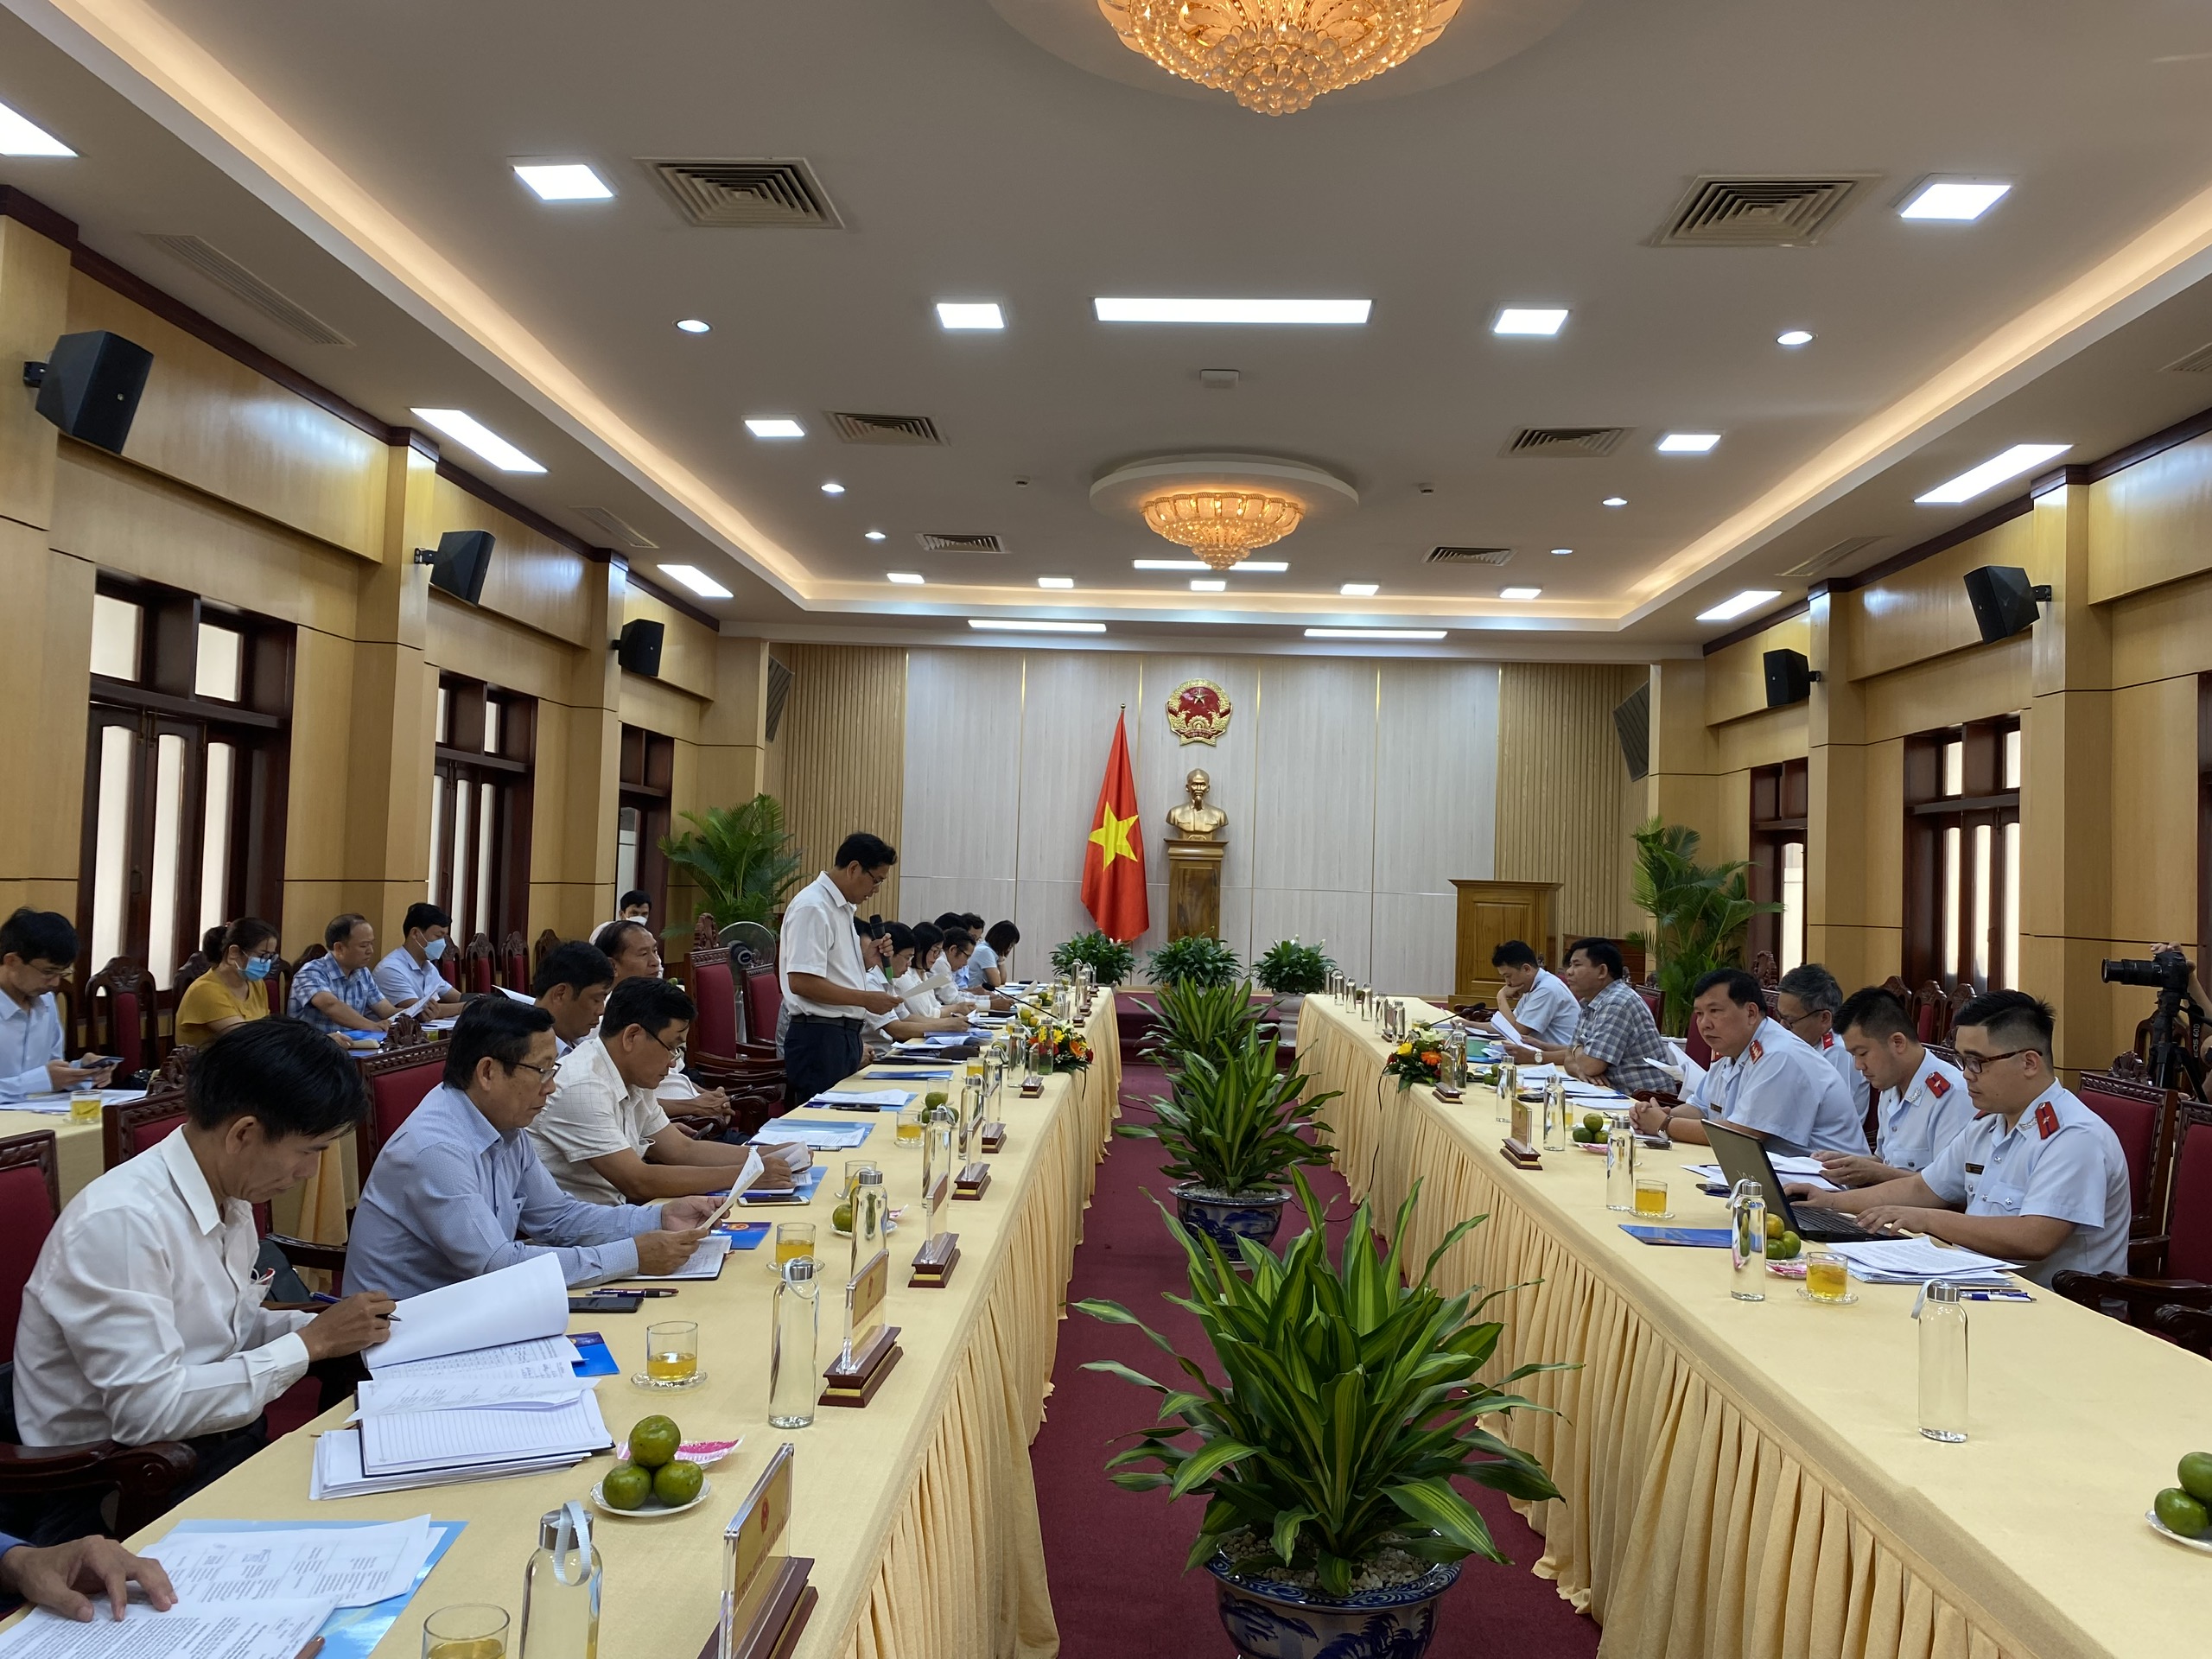 Quảng Ngãi: Đoàn Thanh tra Uỷ ban Dân tộc công bố quyết định thanh tra tại UBND tỉnh Quảng Ngãi